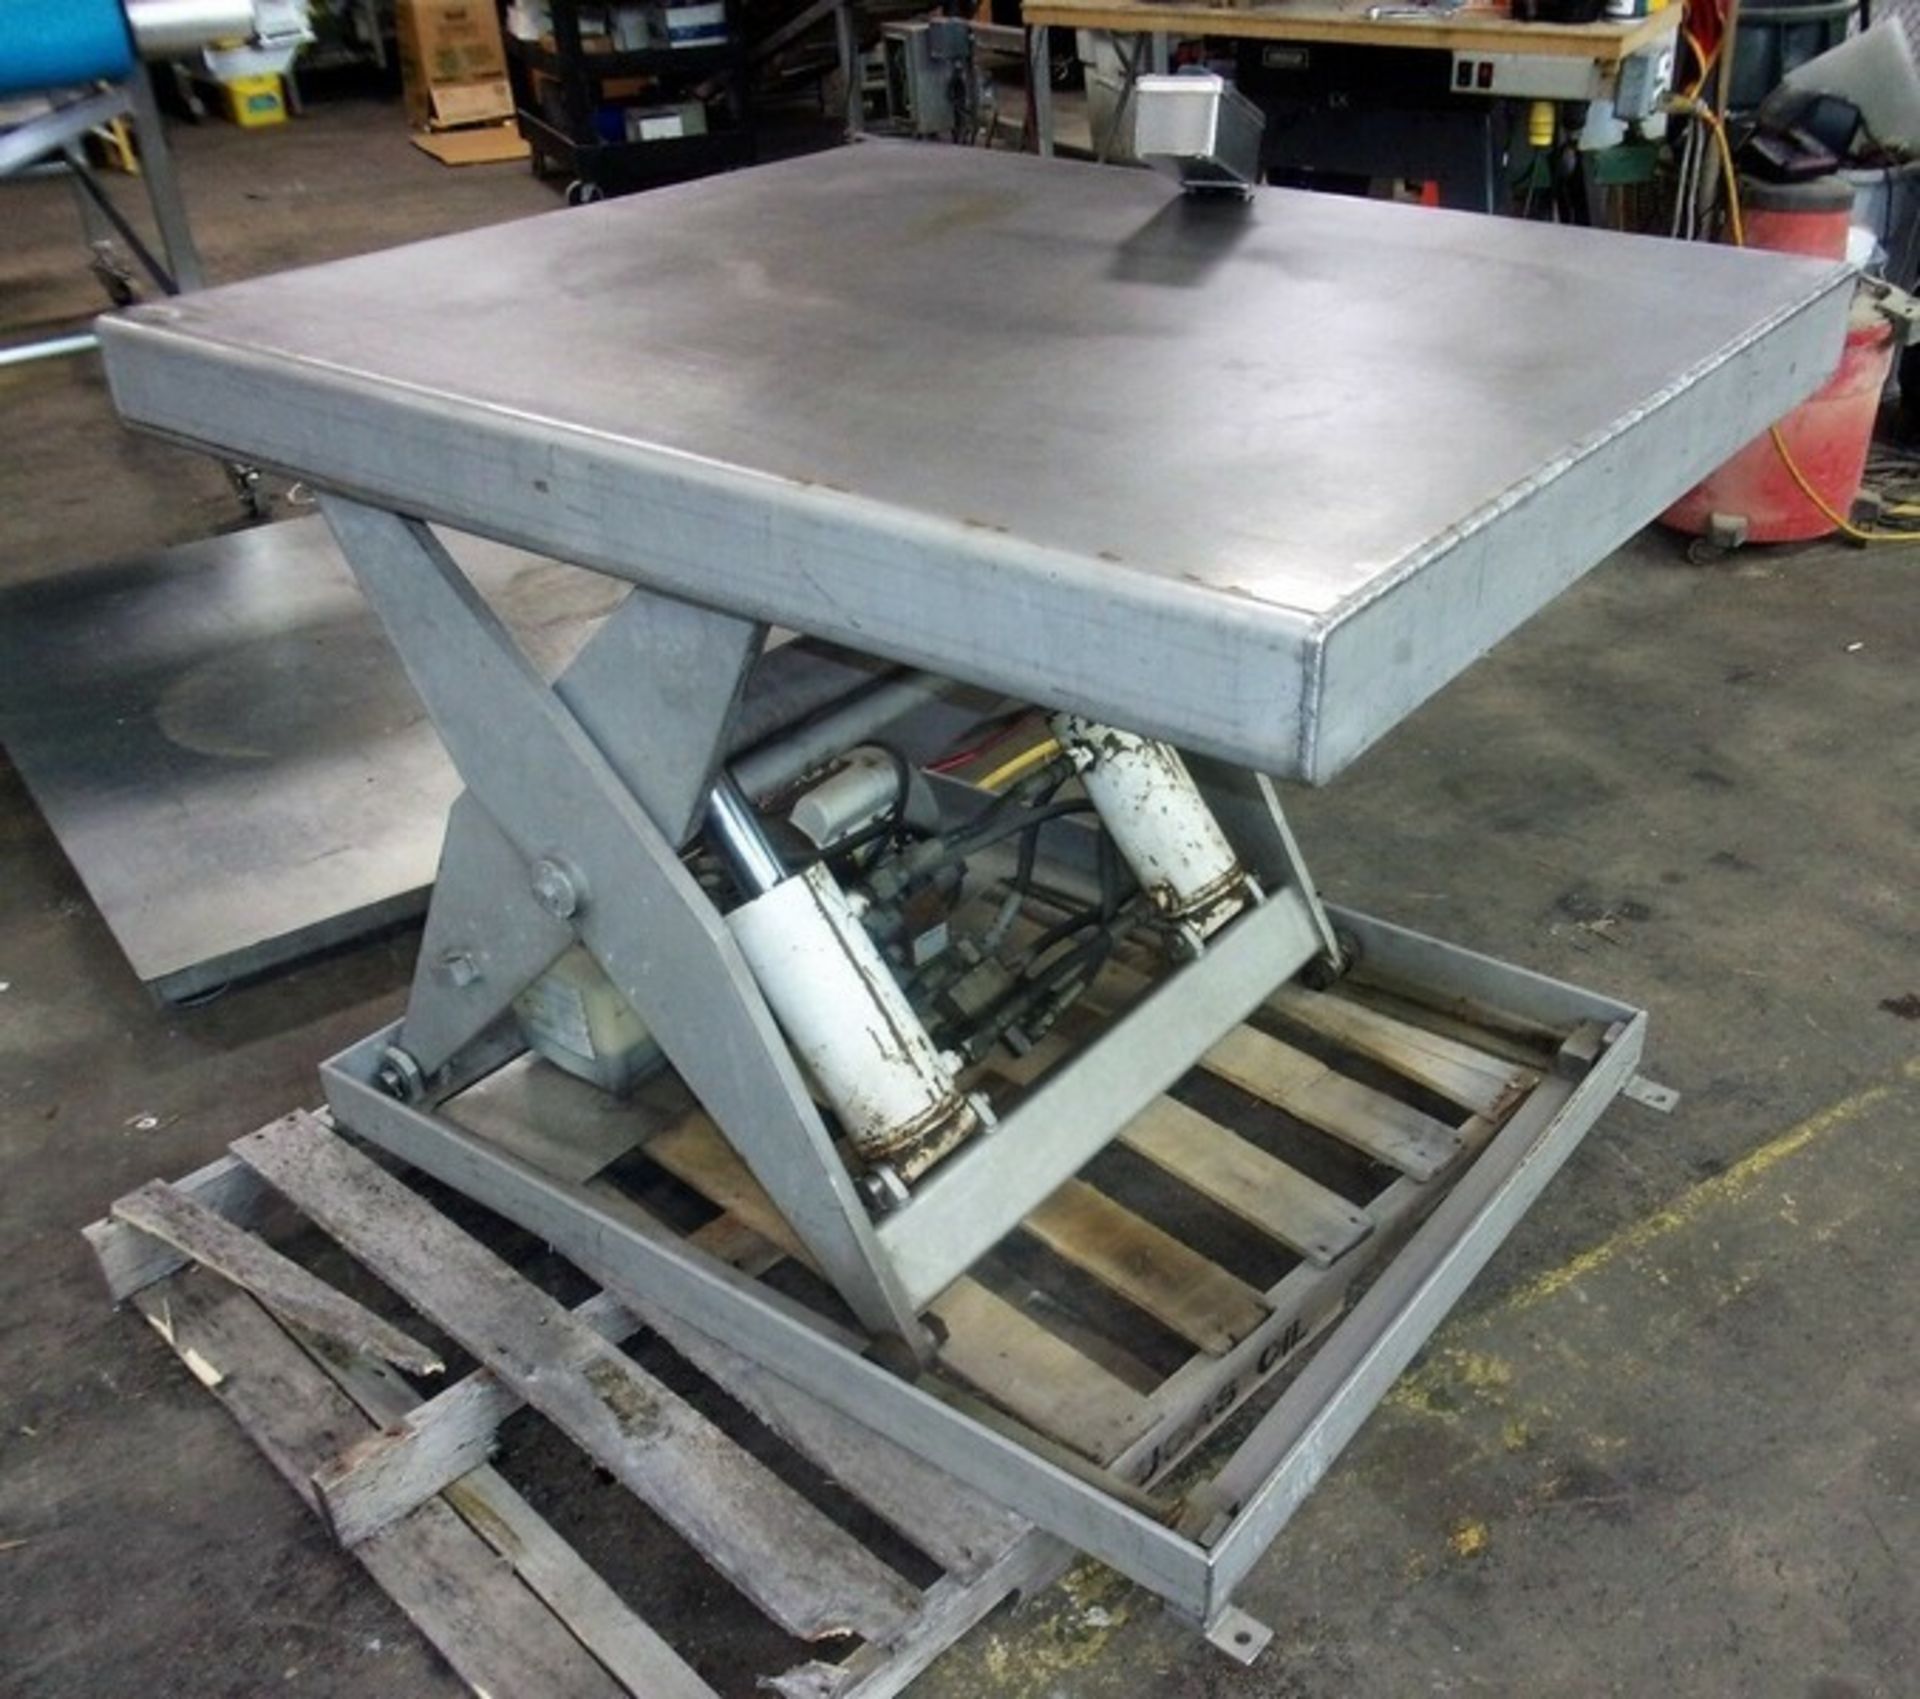 Apache S/S 4,000 lb. Pallet Lift Table, Model EZ4000, Platform Measures 40" W x 45" L, 110 V with - Image 6 of 7